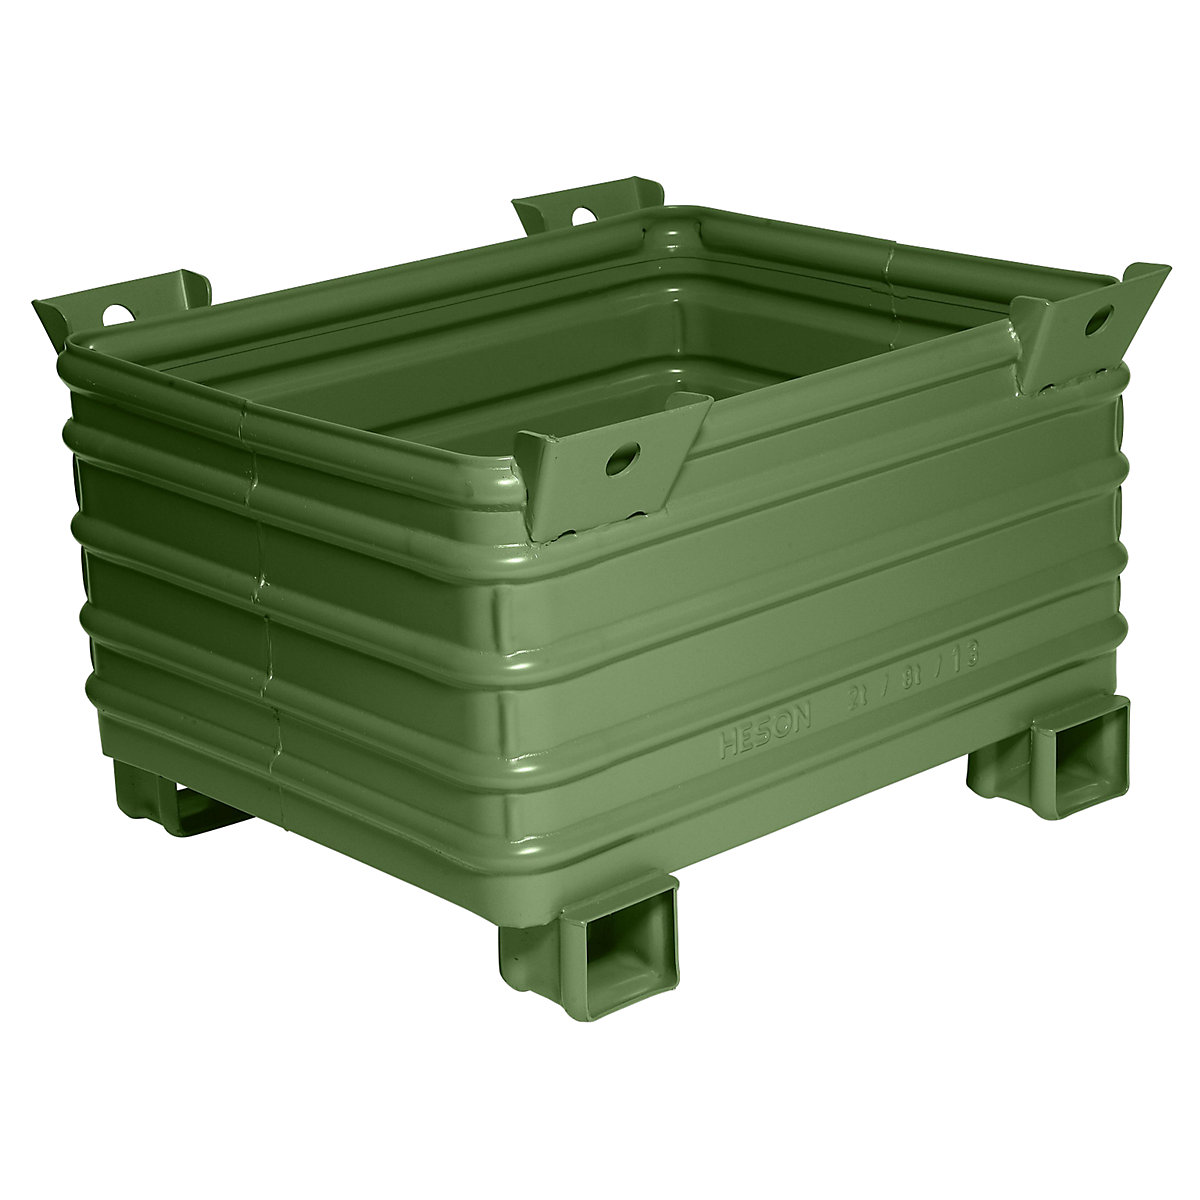 Contenitore impilabile per carichi pesanti – Heson, largh. x lungh. 800 x 1000 mm, con piedini a U, verniciatura in verde, a partire da 5 pz.